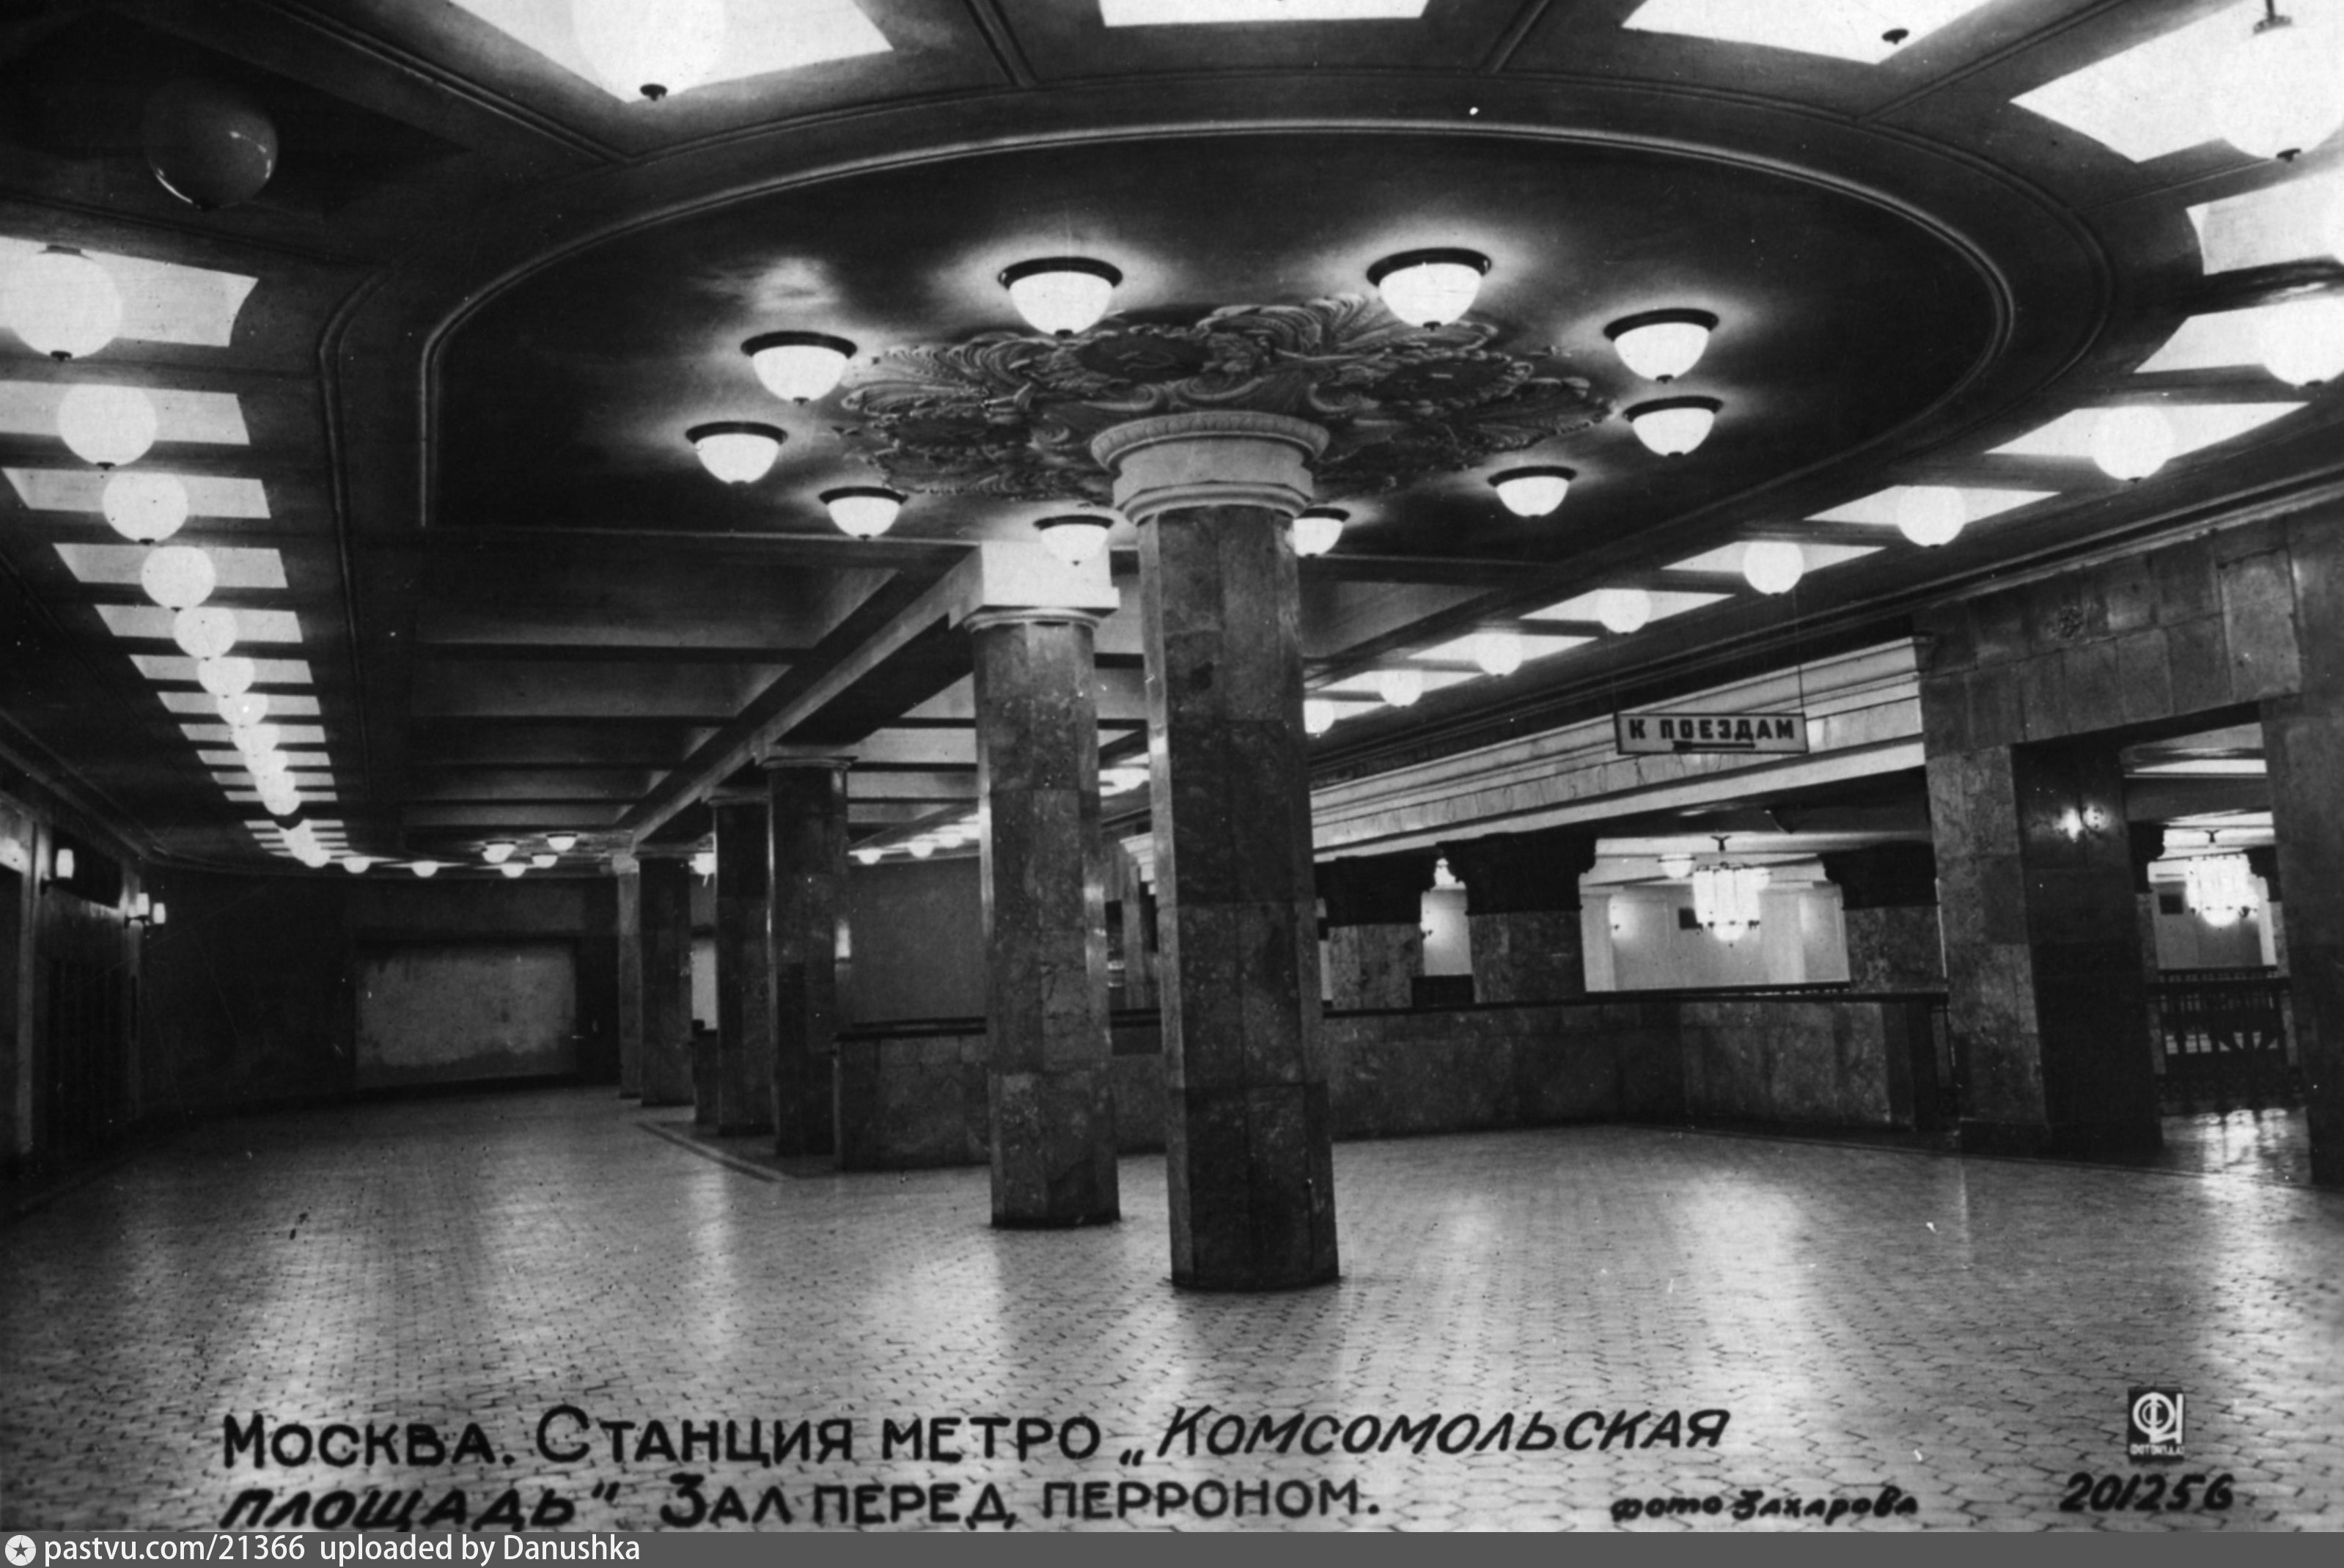 Московское метро в 1935 году. Московский метрополитен 1935. Станция Комсомольская 1935. Метро 1935 года в Москве. Станция Комсомольская 1935 год.